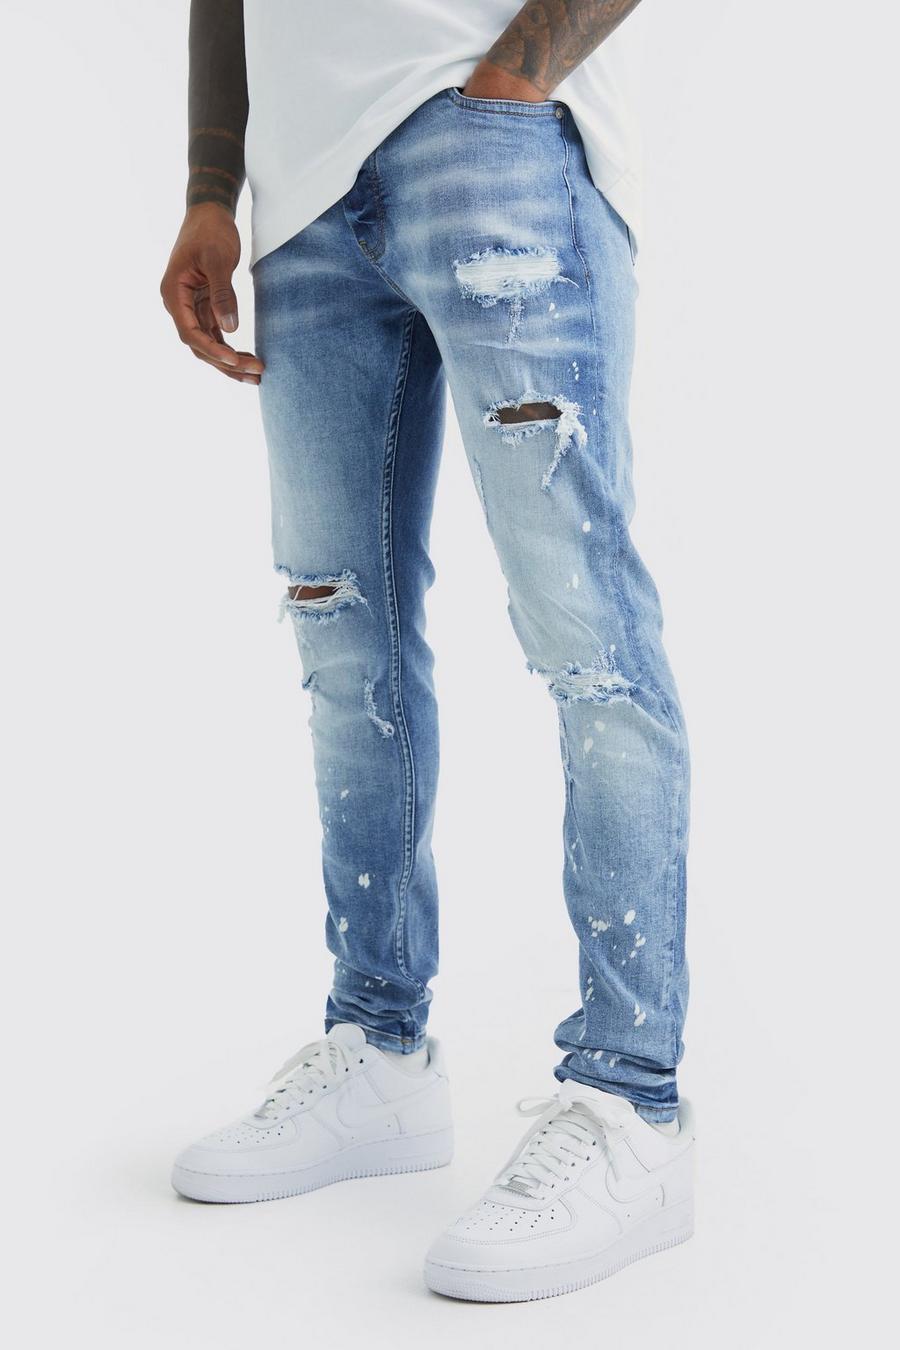 Jeans Skinny Fit Stretch candeggiati con strappi sul ginocchio, Ice blue